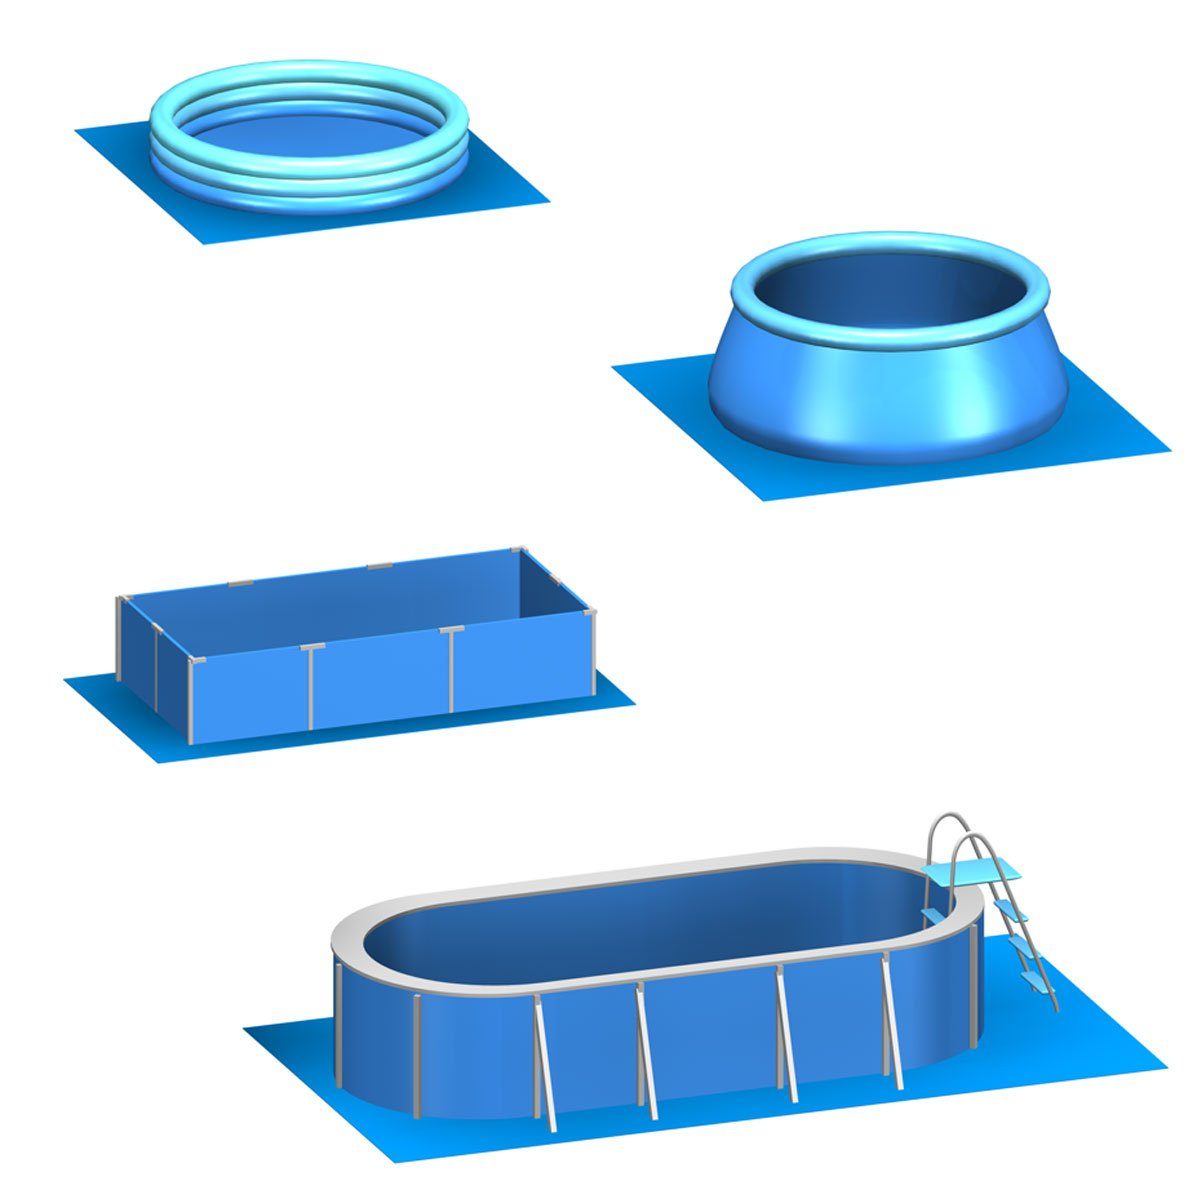 4,2 m² Blau Matten rutschfest 12 Stecksystem Bodenmatte EVA eyepower Poolunterlage Unterlegmatten,